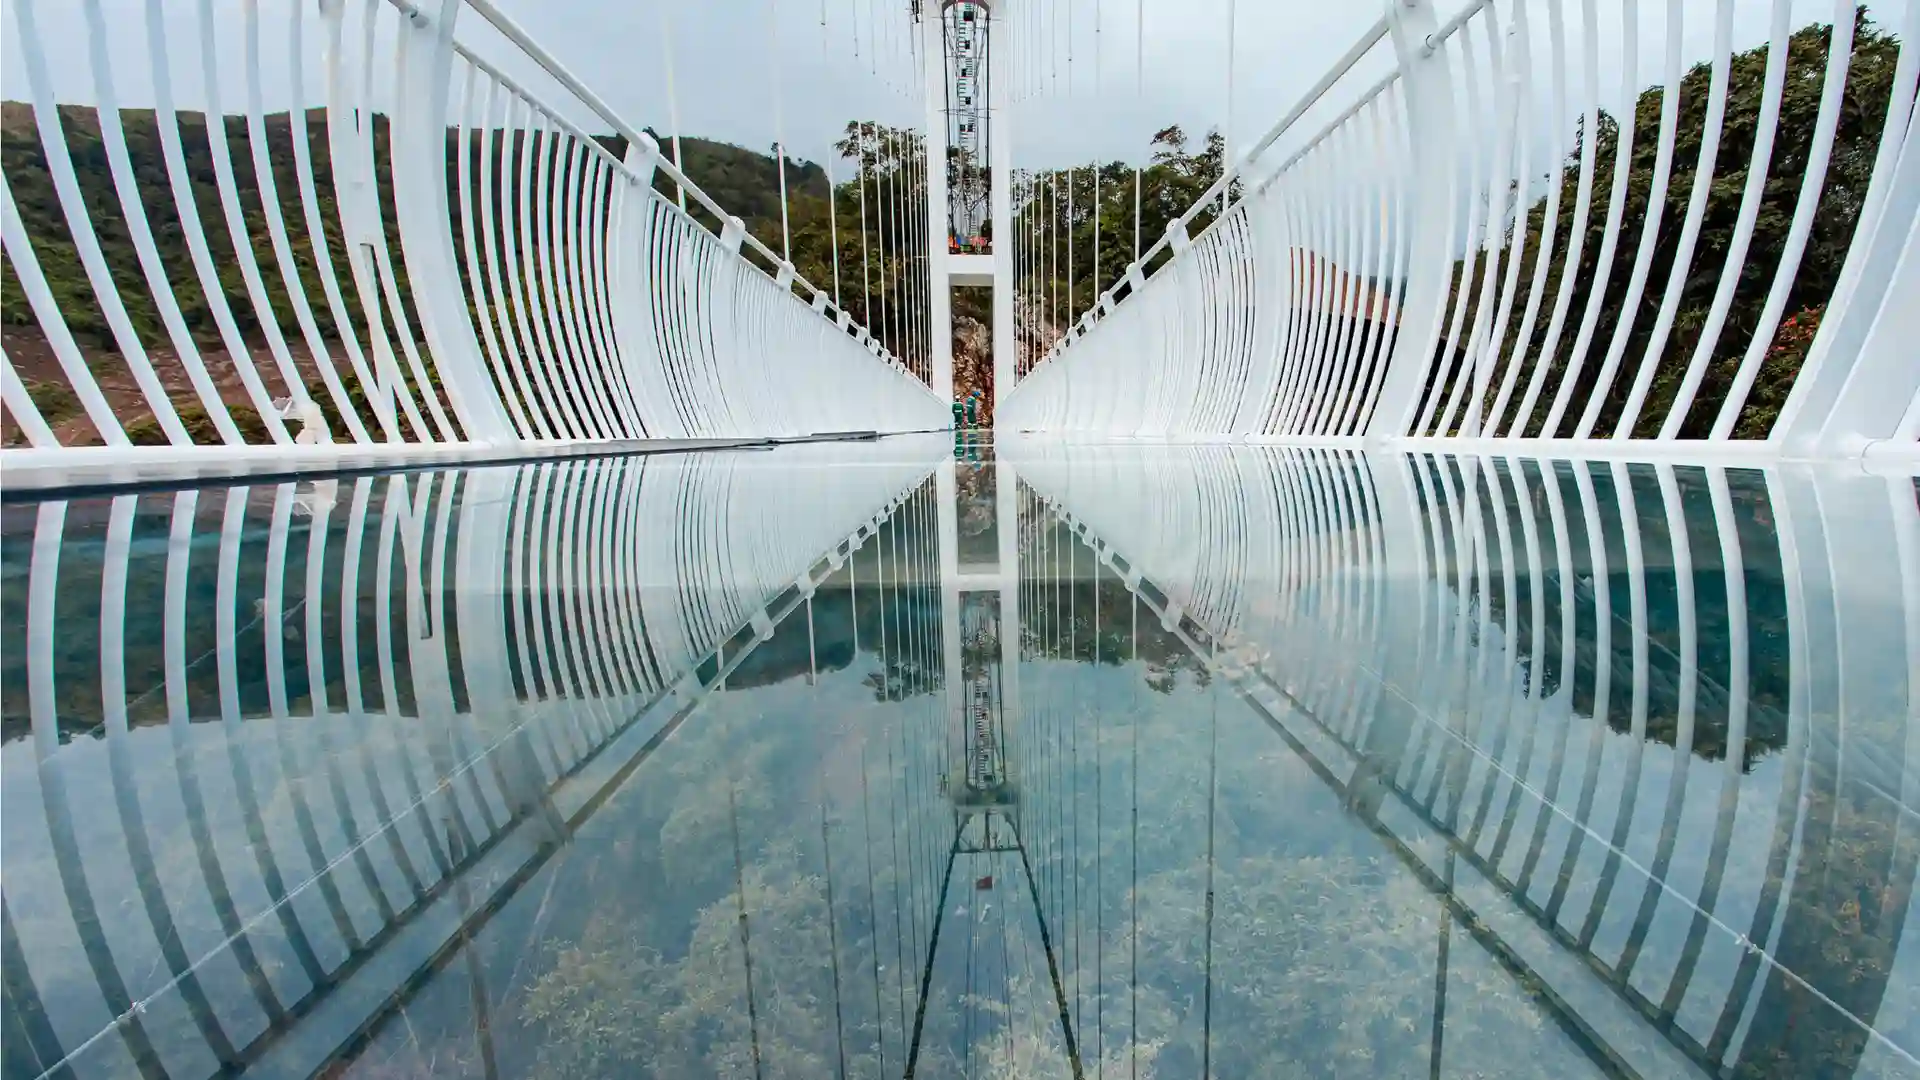 Así es Bach Long Bridge: el puente flotante de cristal más largo del mundo